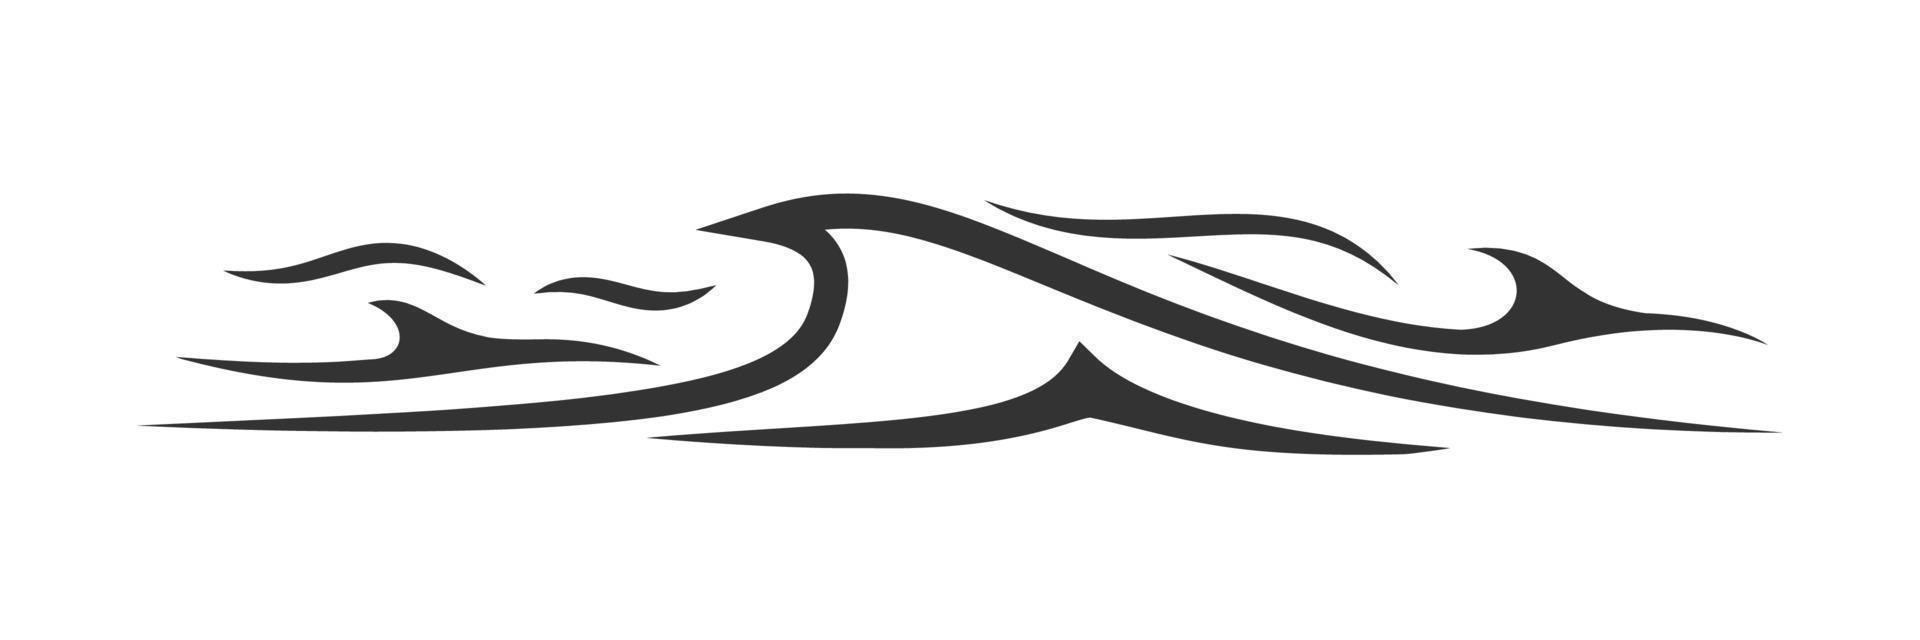 silhouette de vague isolée sur fond blanc vecteur